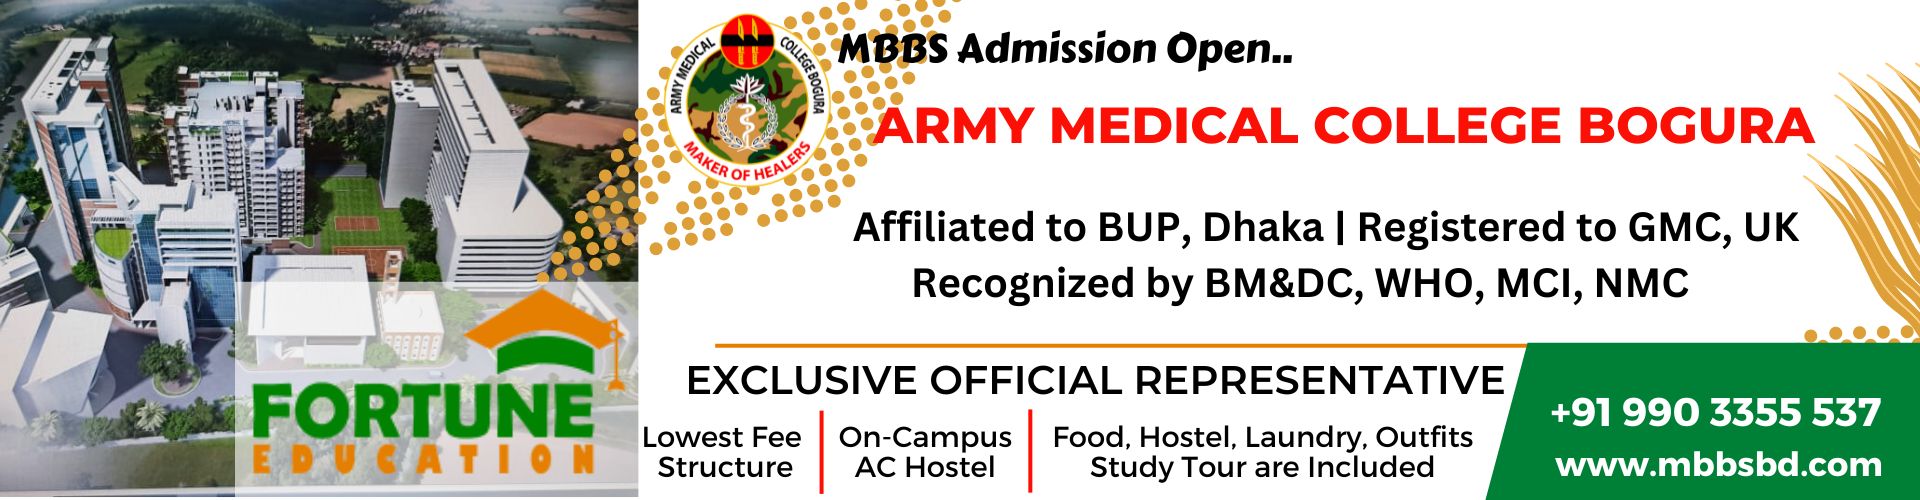 Army Medical College Bogura (AMCB)